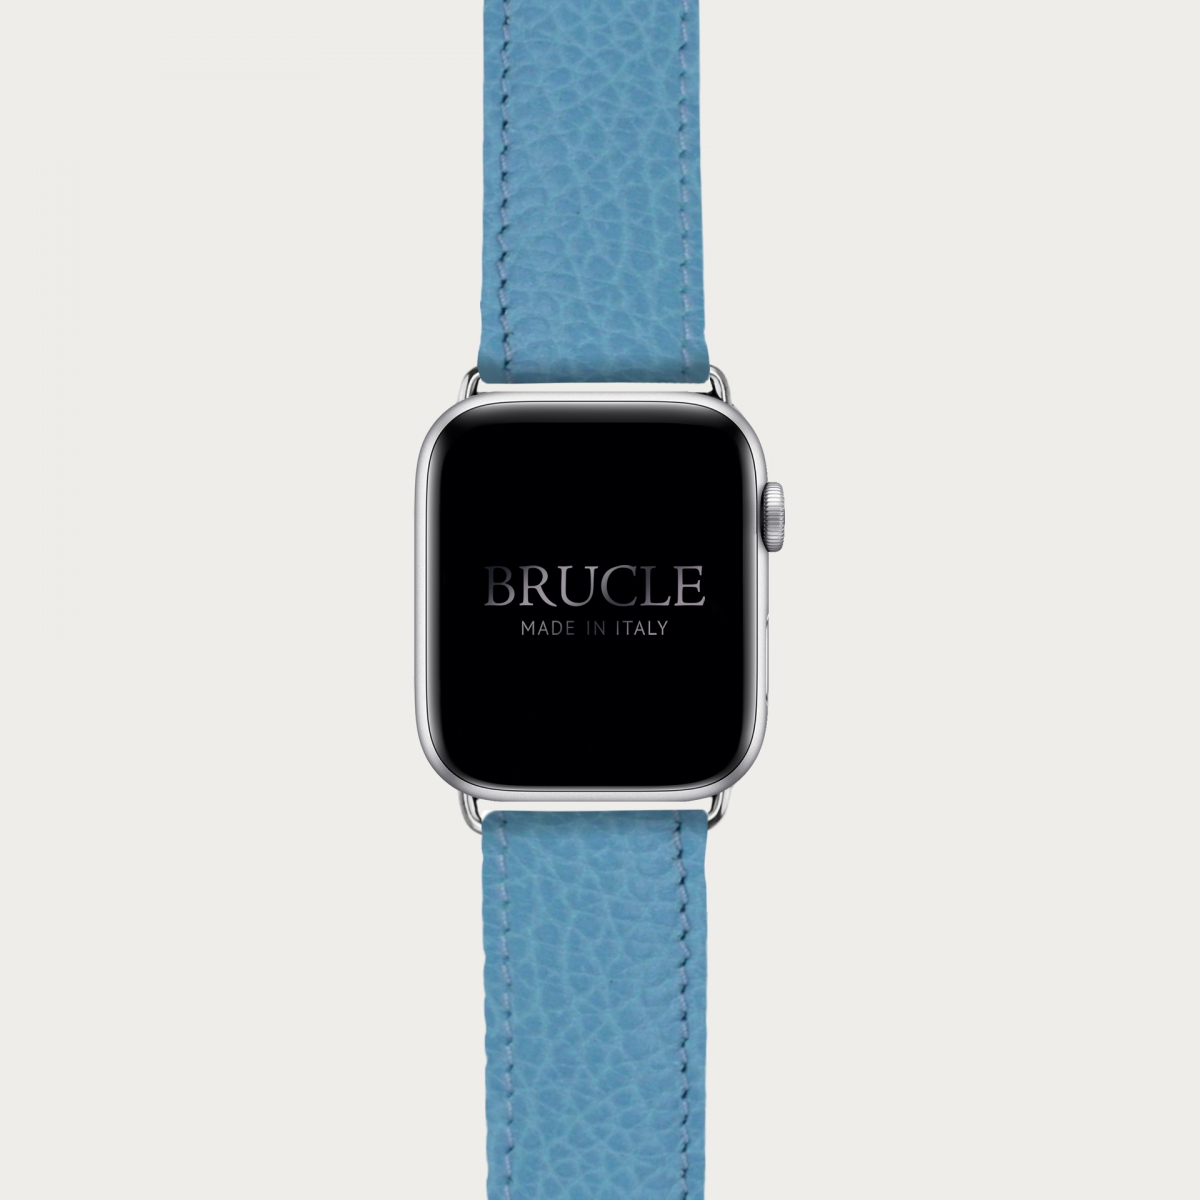 Correa de reloj compatible con Apple Watch / Samsung smartwatch, estampado azul claro